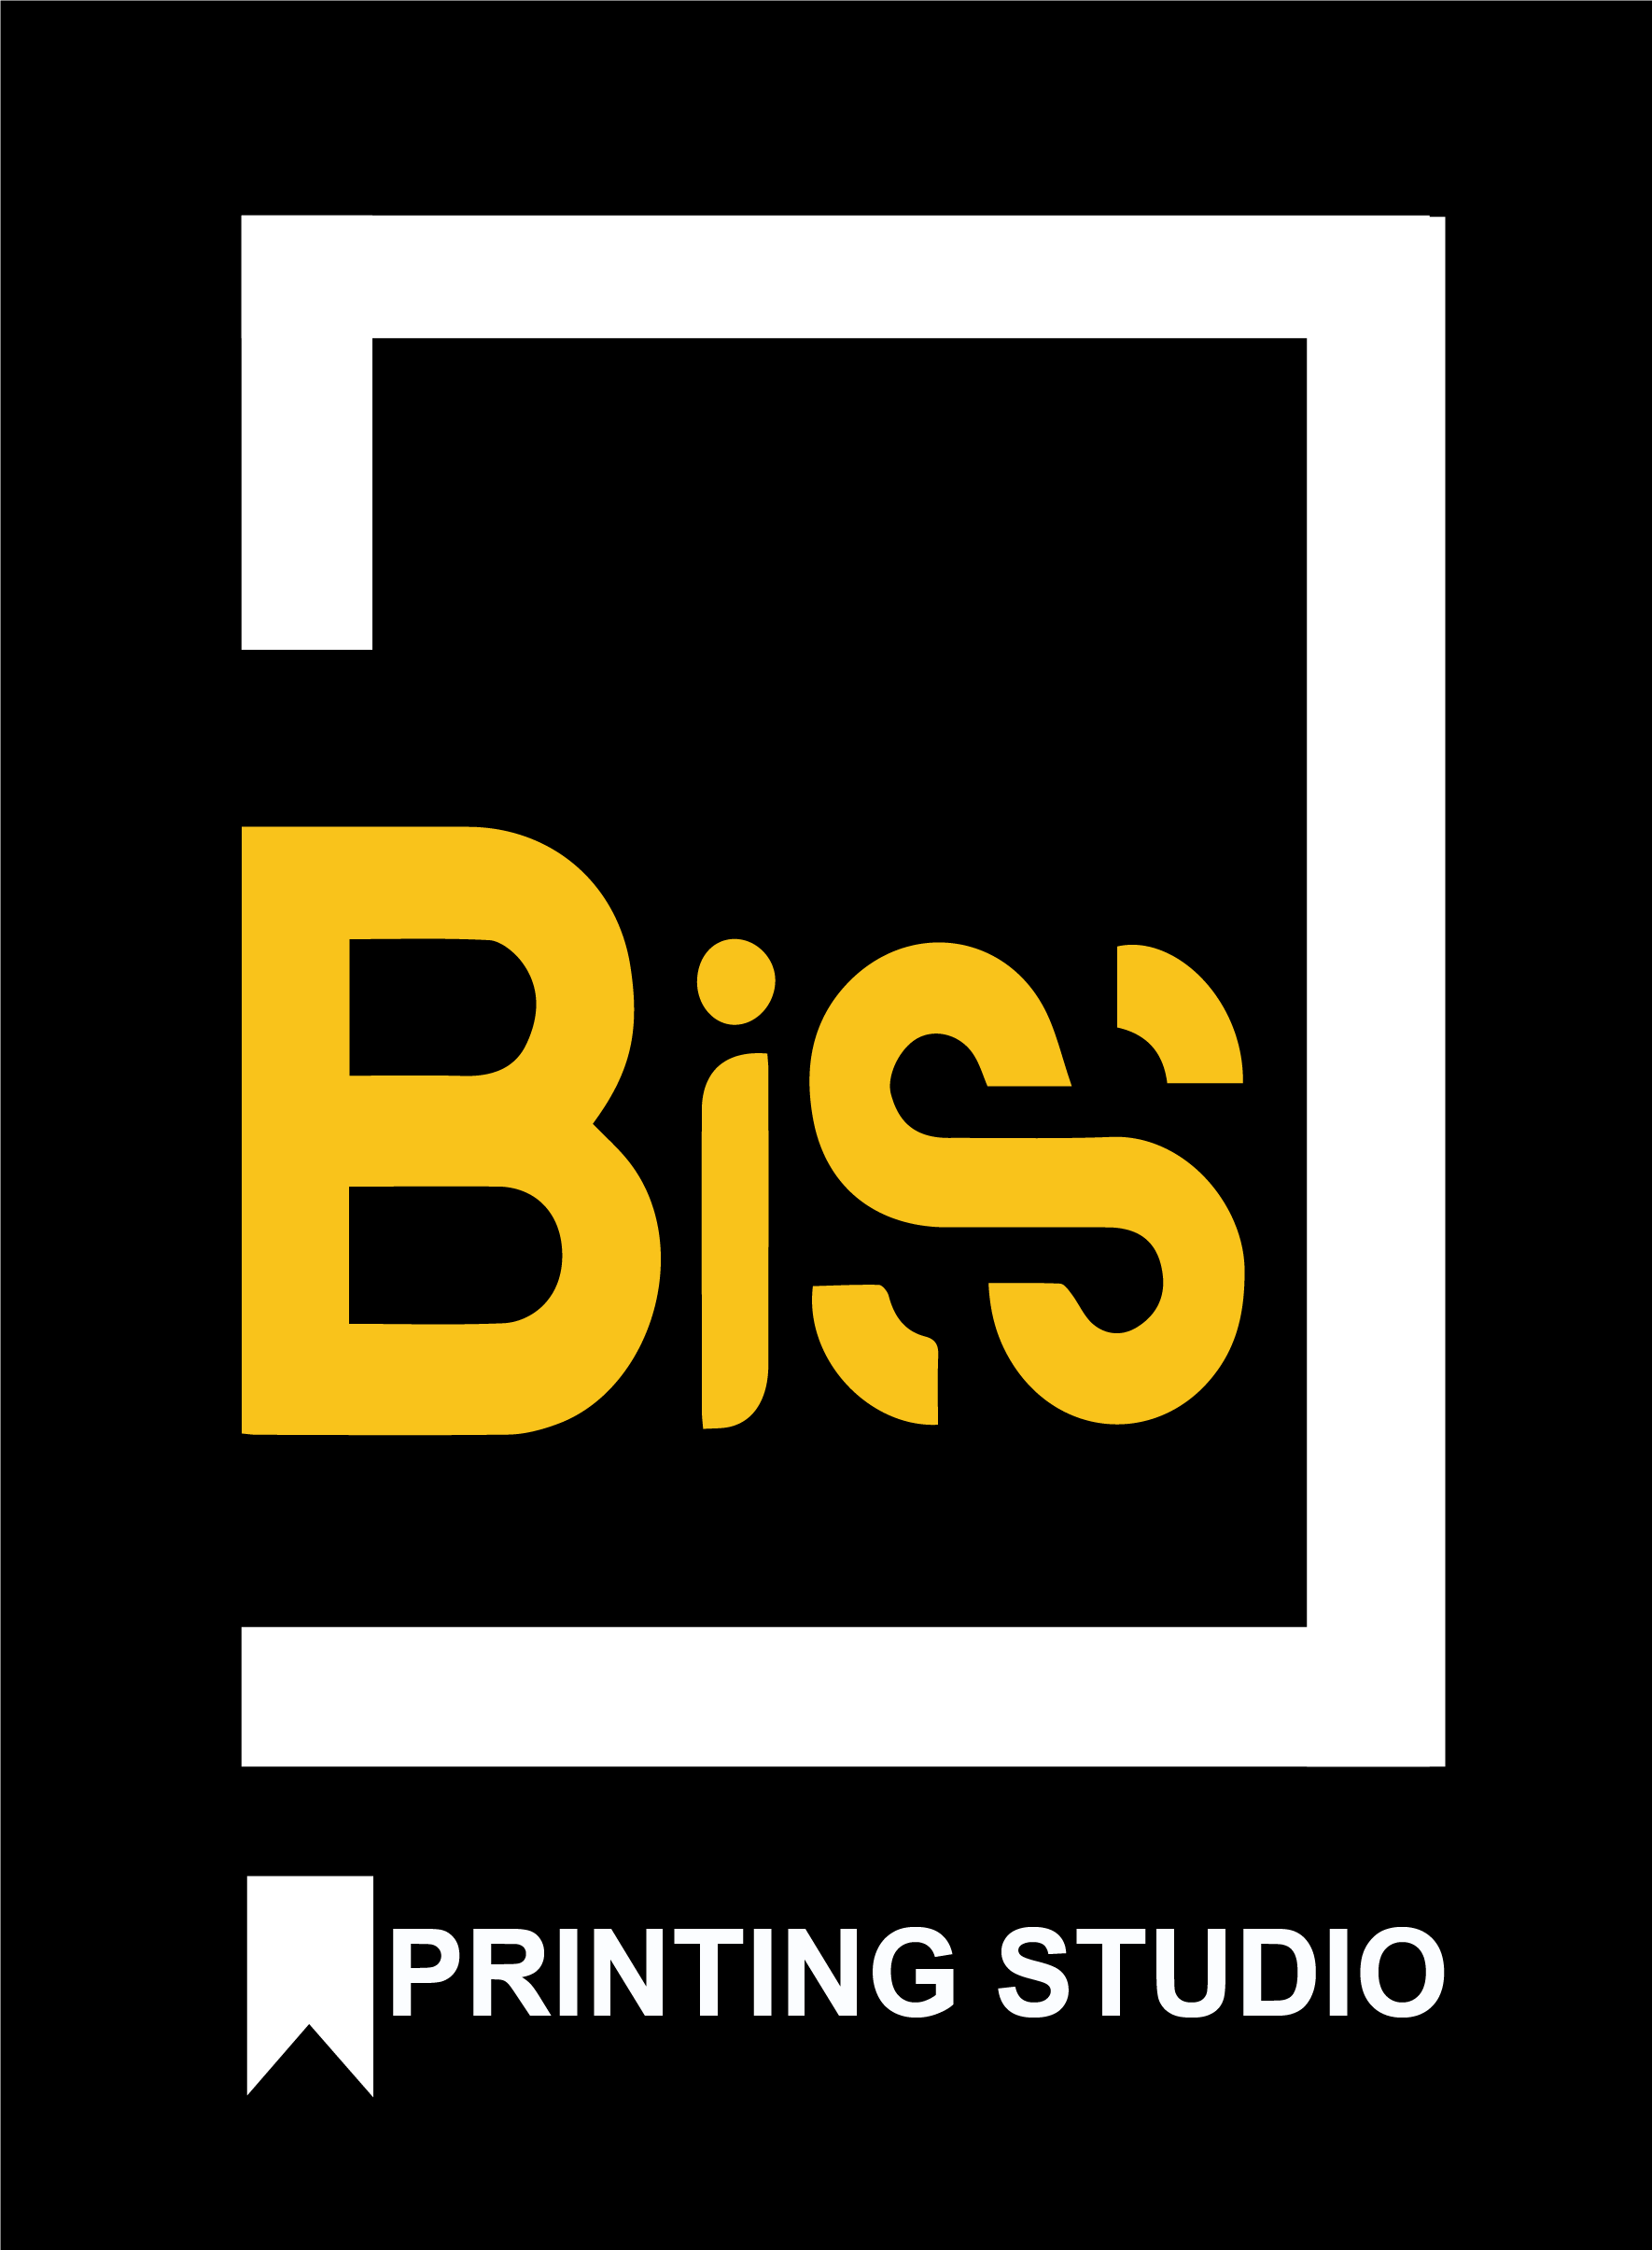 Biss Printing Studio